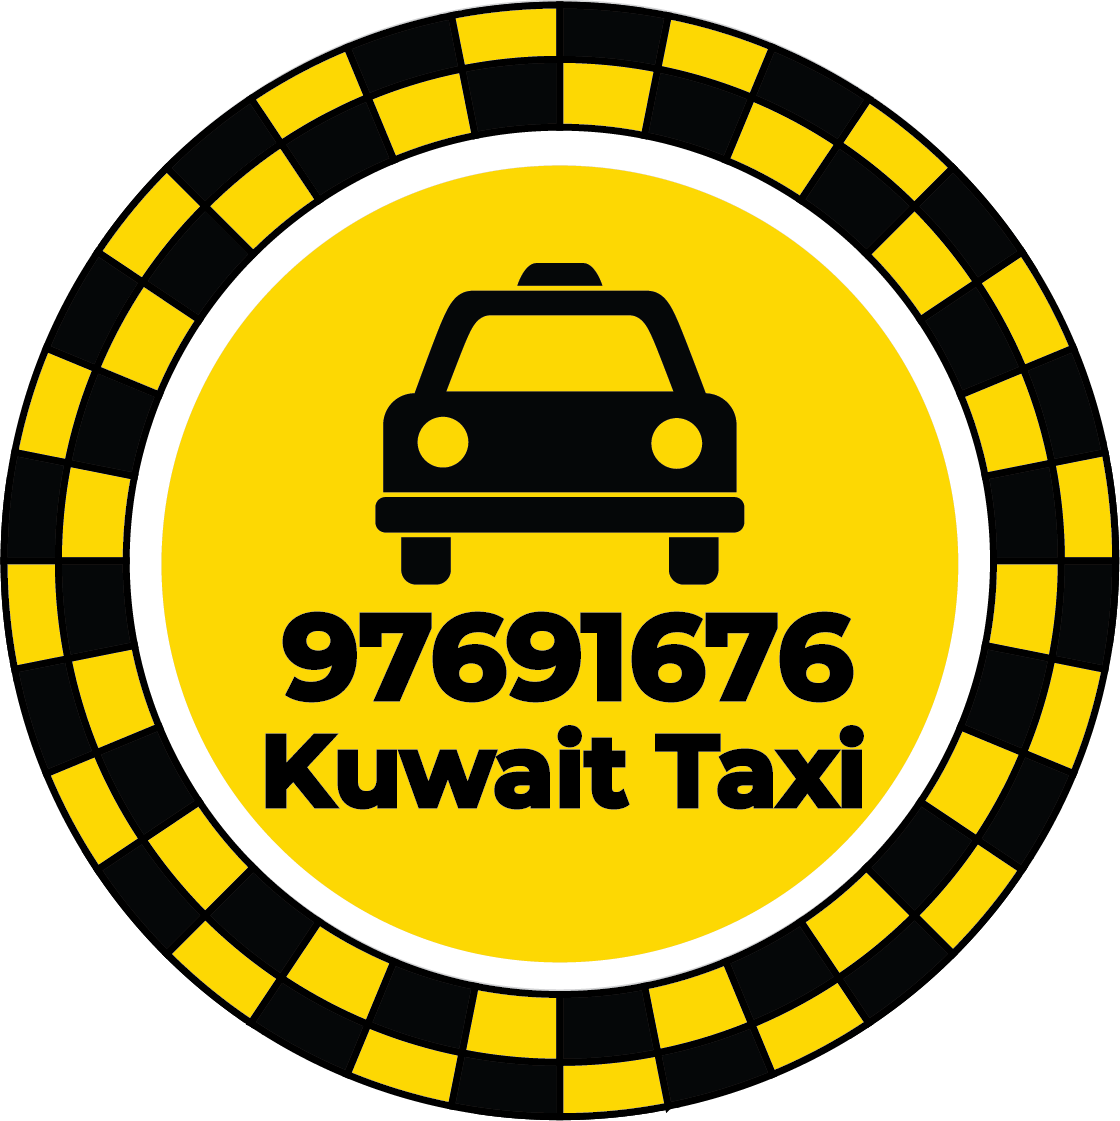 Abdullah Al Salem Taxi - Taxi Number Abdullah Al Salem